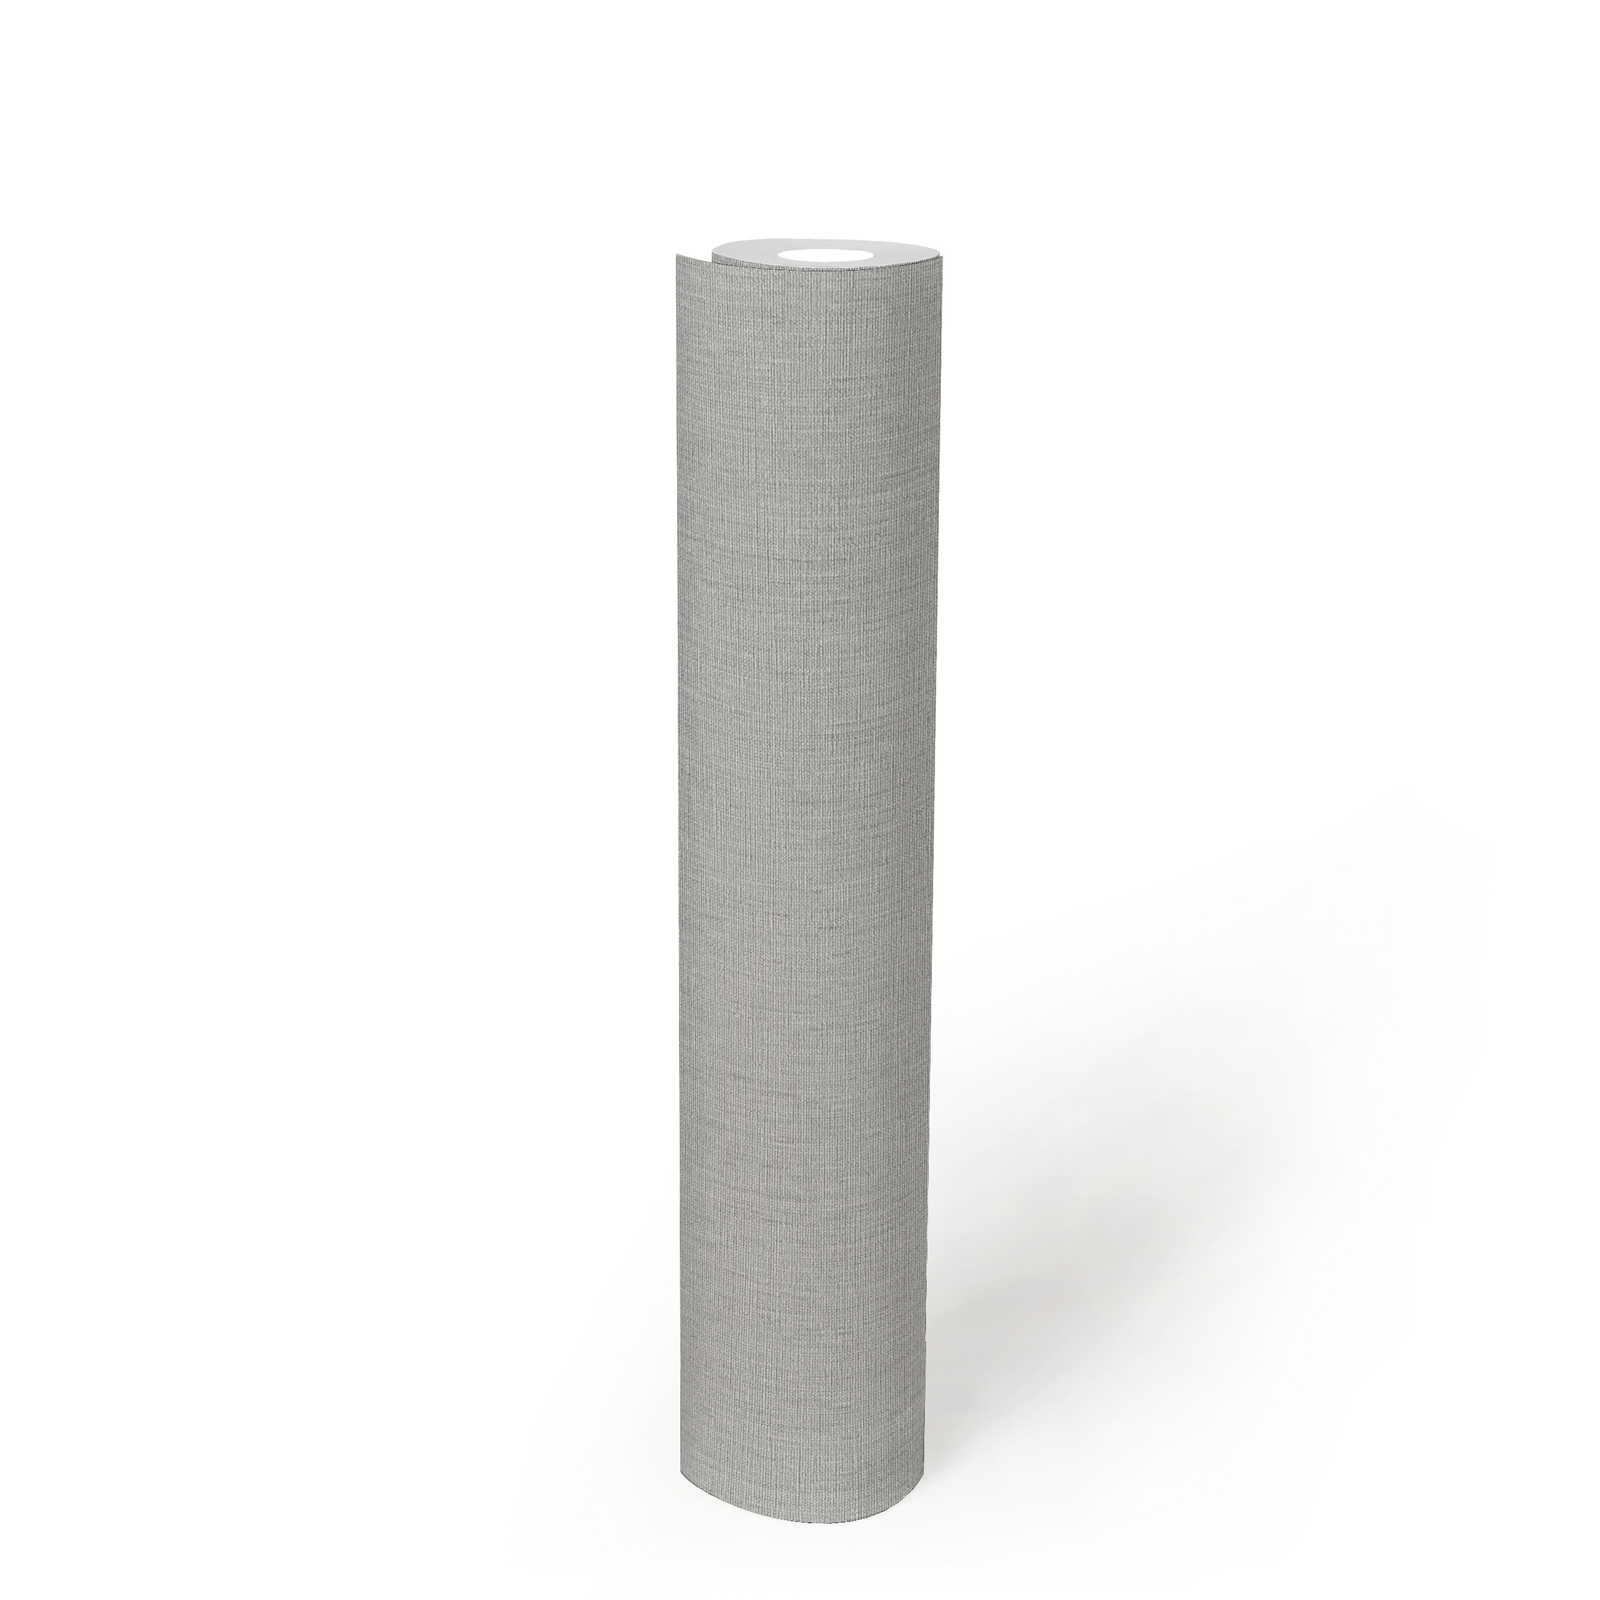             papier peint en papier uni légèrement structuré dans une teinte sobre - gris
        